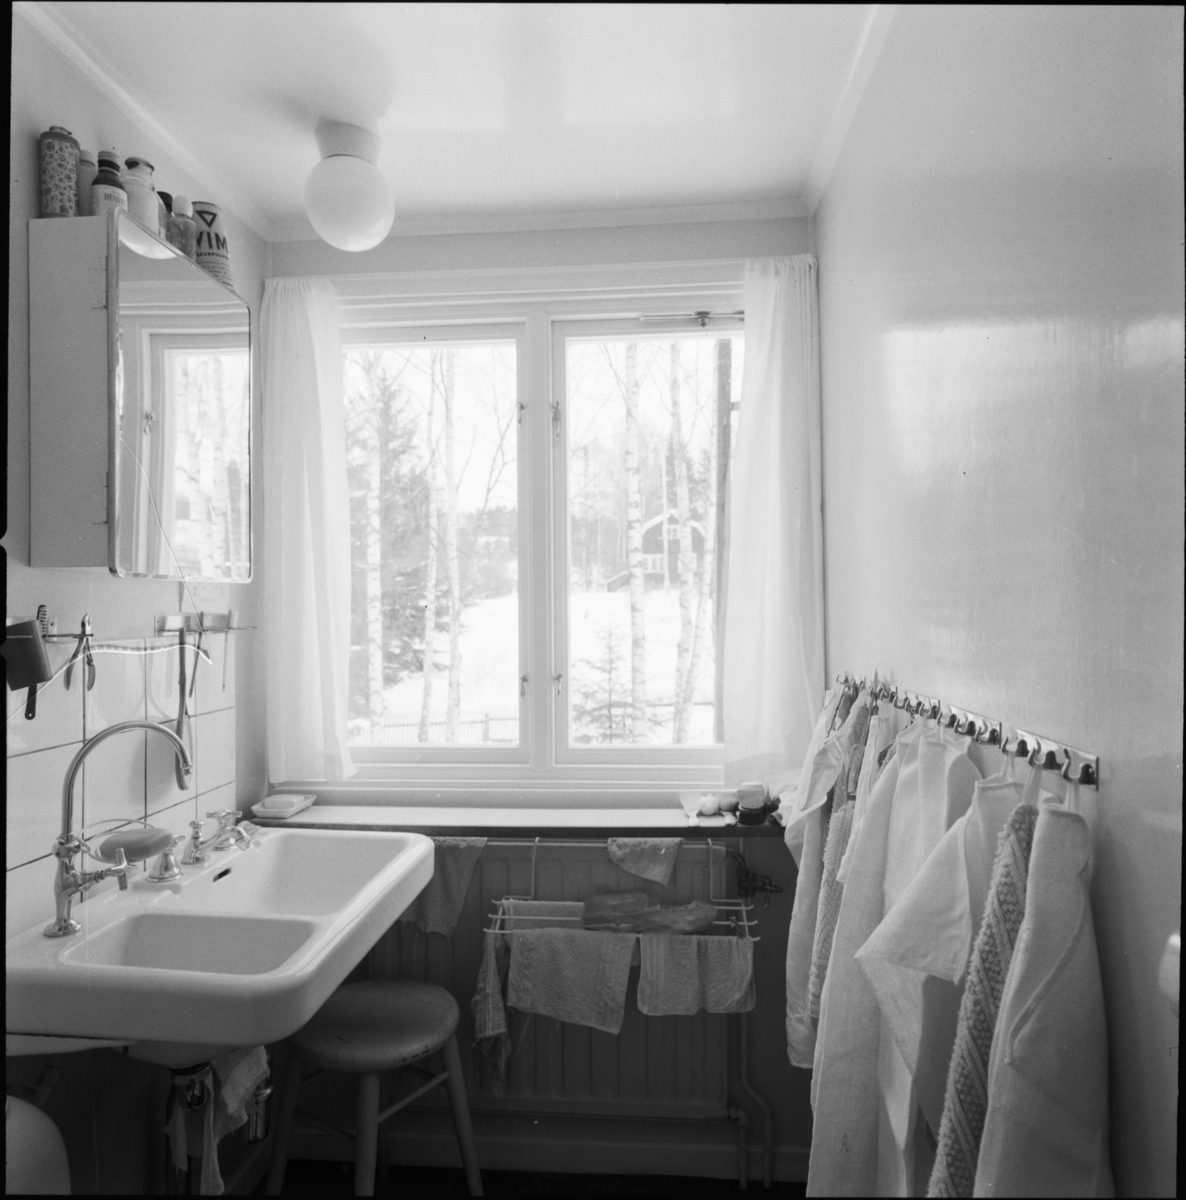 villa Ahlgren
Interiör, tvättrum med handfat vid ljust fönster.